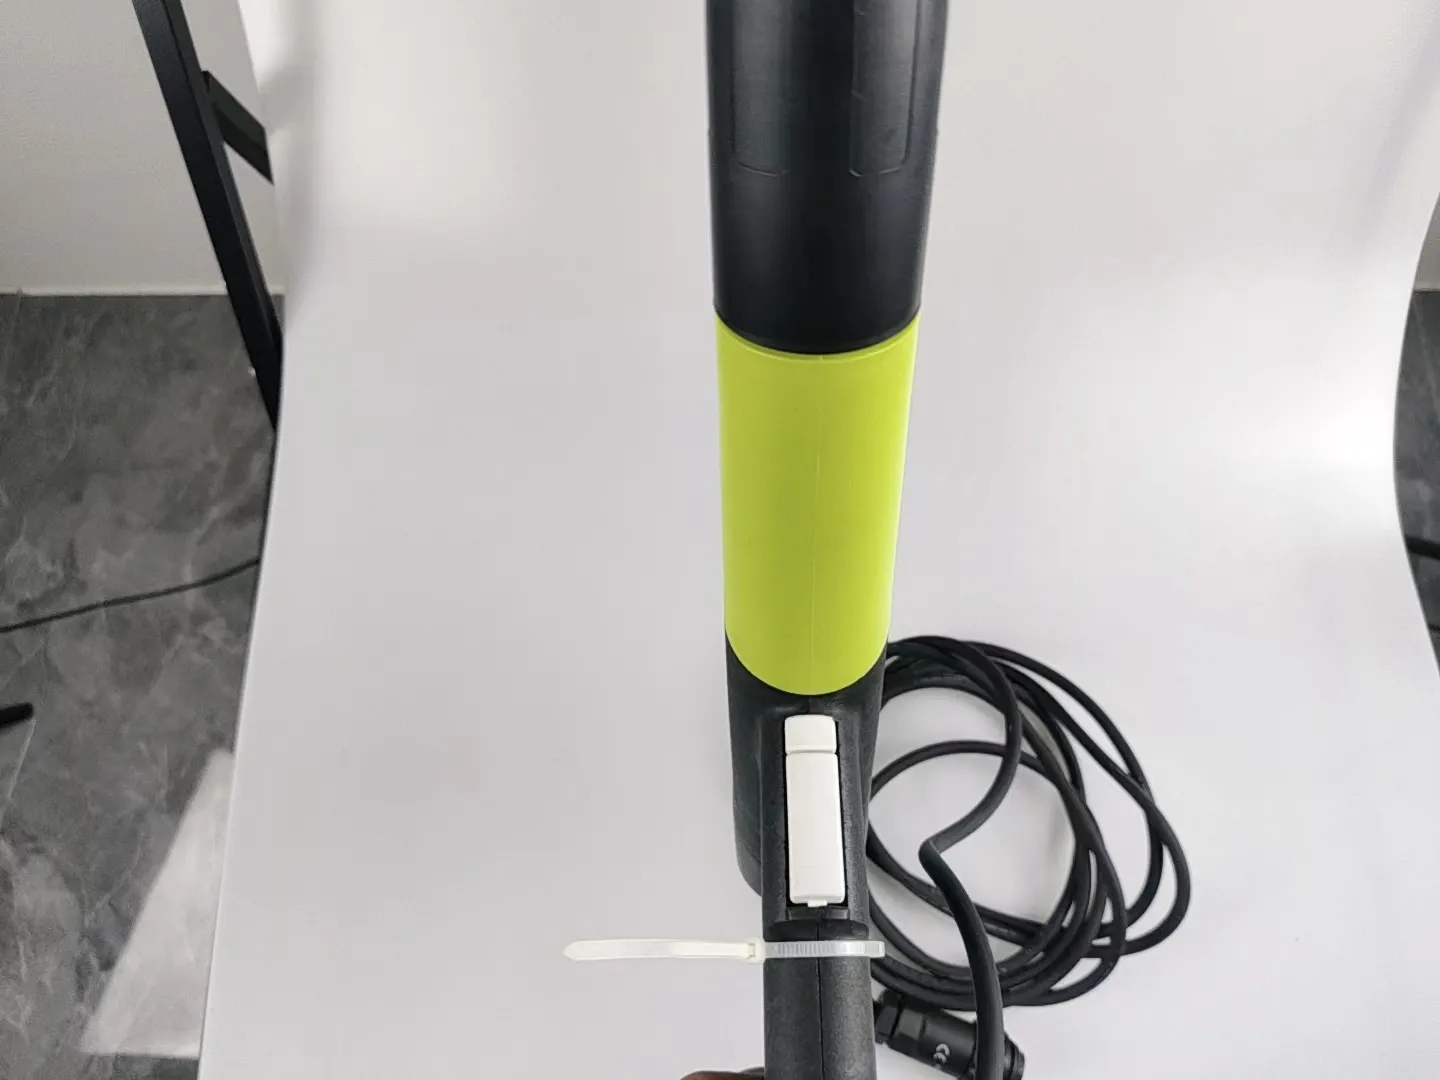 Satılık KFB çin profesyonel üretim mini püskürtme tabancası toz kaplama sarı ve yeşil